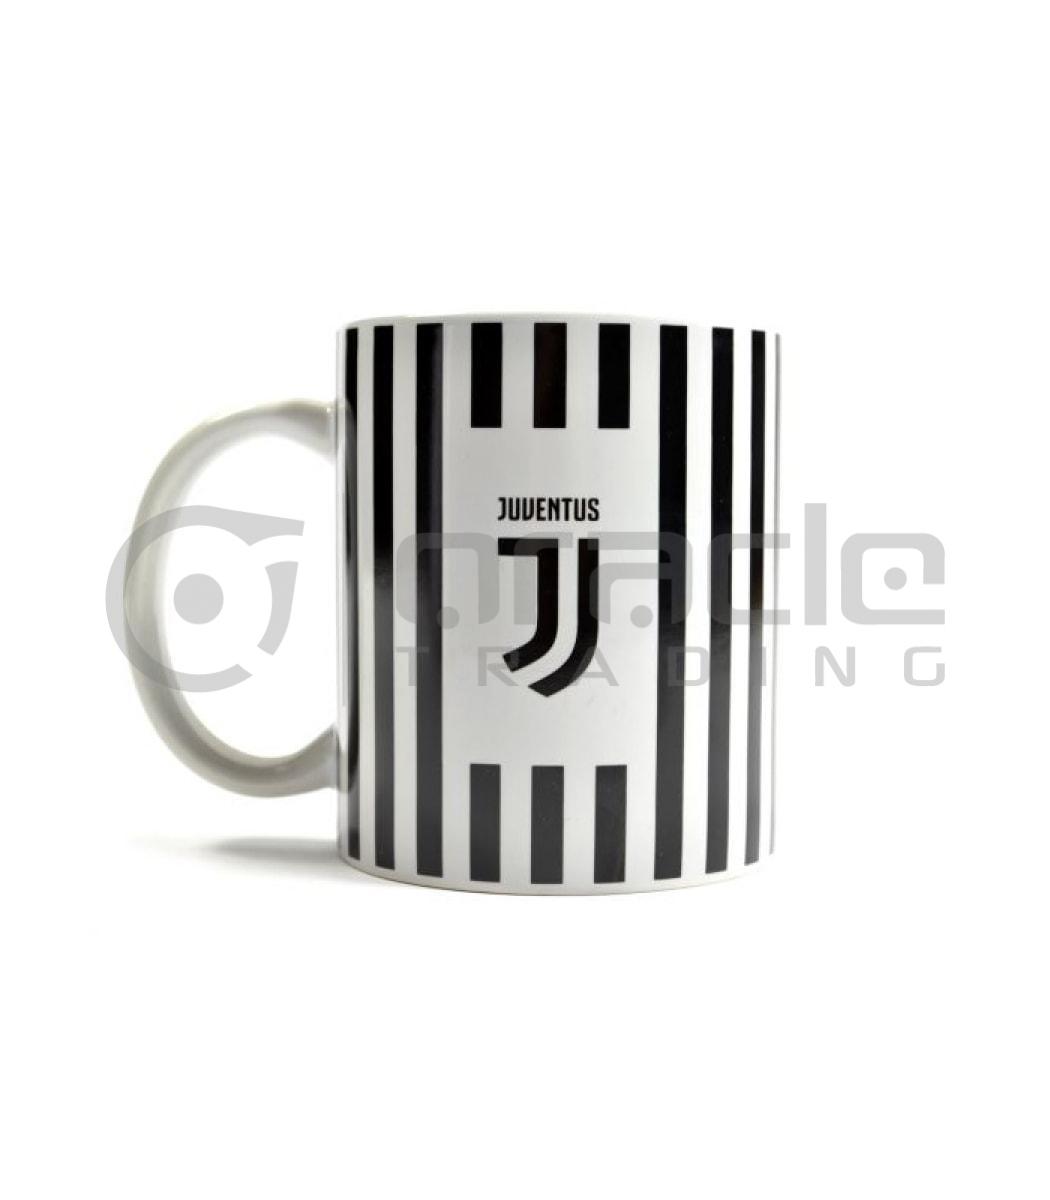 Juventus Mug - Stripes